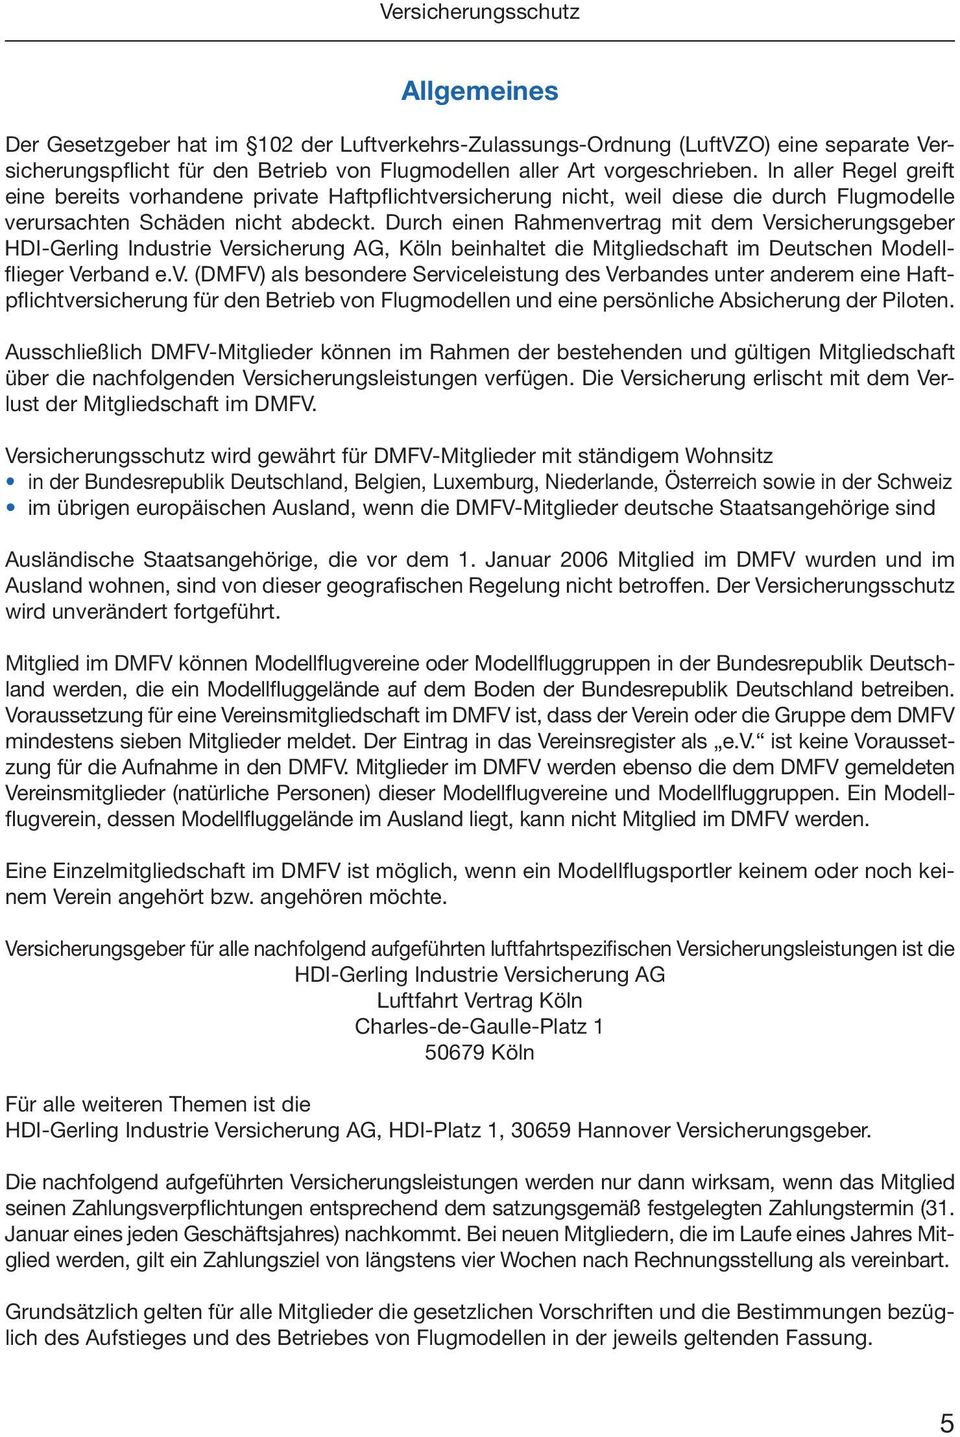 Durch einen Rahmenvertrag mit dem Versicherungsgeber HDI-Gerling Industrie Versicherung AG, Köln beinhaltet die Mitgliedschaft im Deutschen Modellflieger Verband e.v. (DMFV) als besondere Serviceleistung des Verbandes unter anderem eine Haftpflichtversicherung für den Betrieb von Flugmodellen und eine persönliche Absicherung der Piloten.